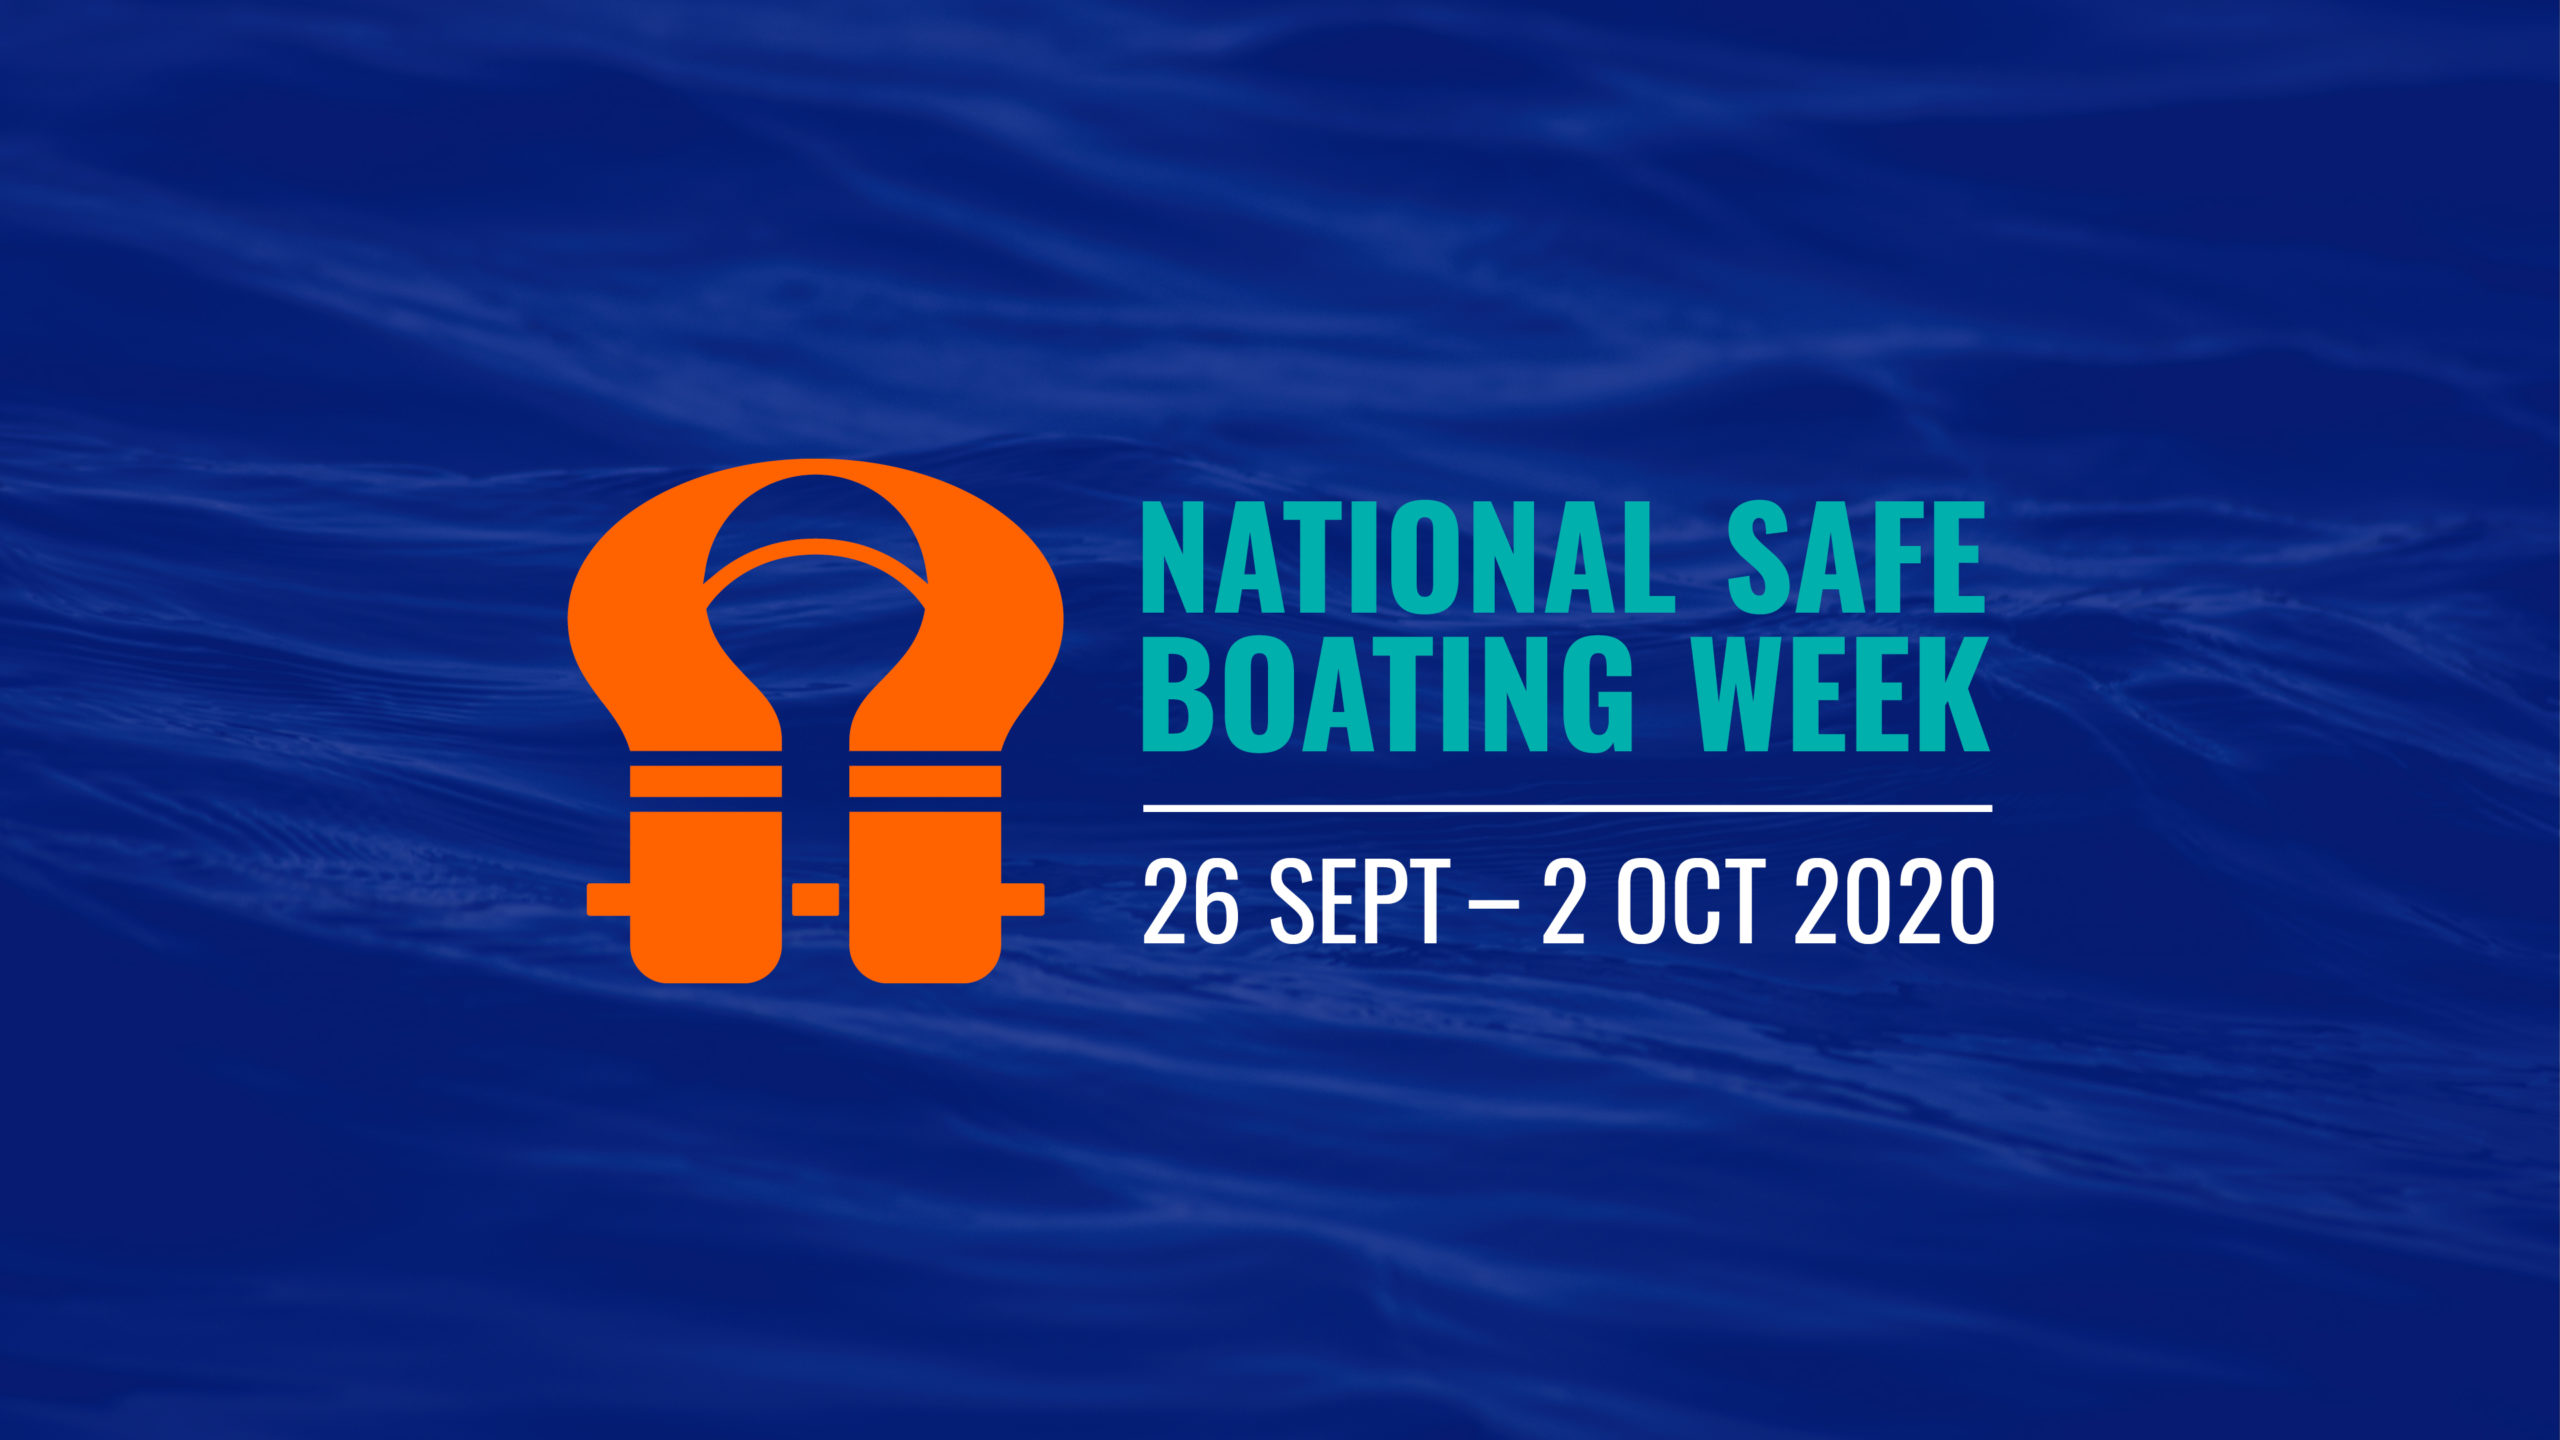 National Safe Boating Week, 26 September - 2 October 2020